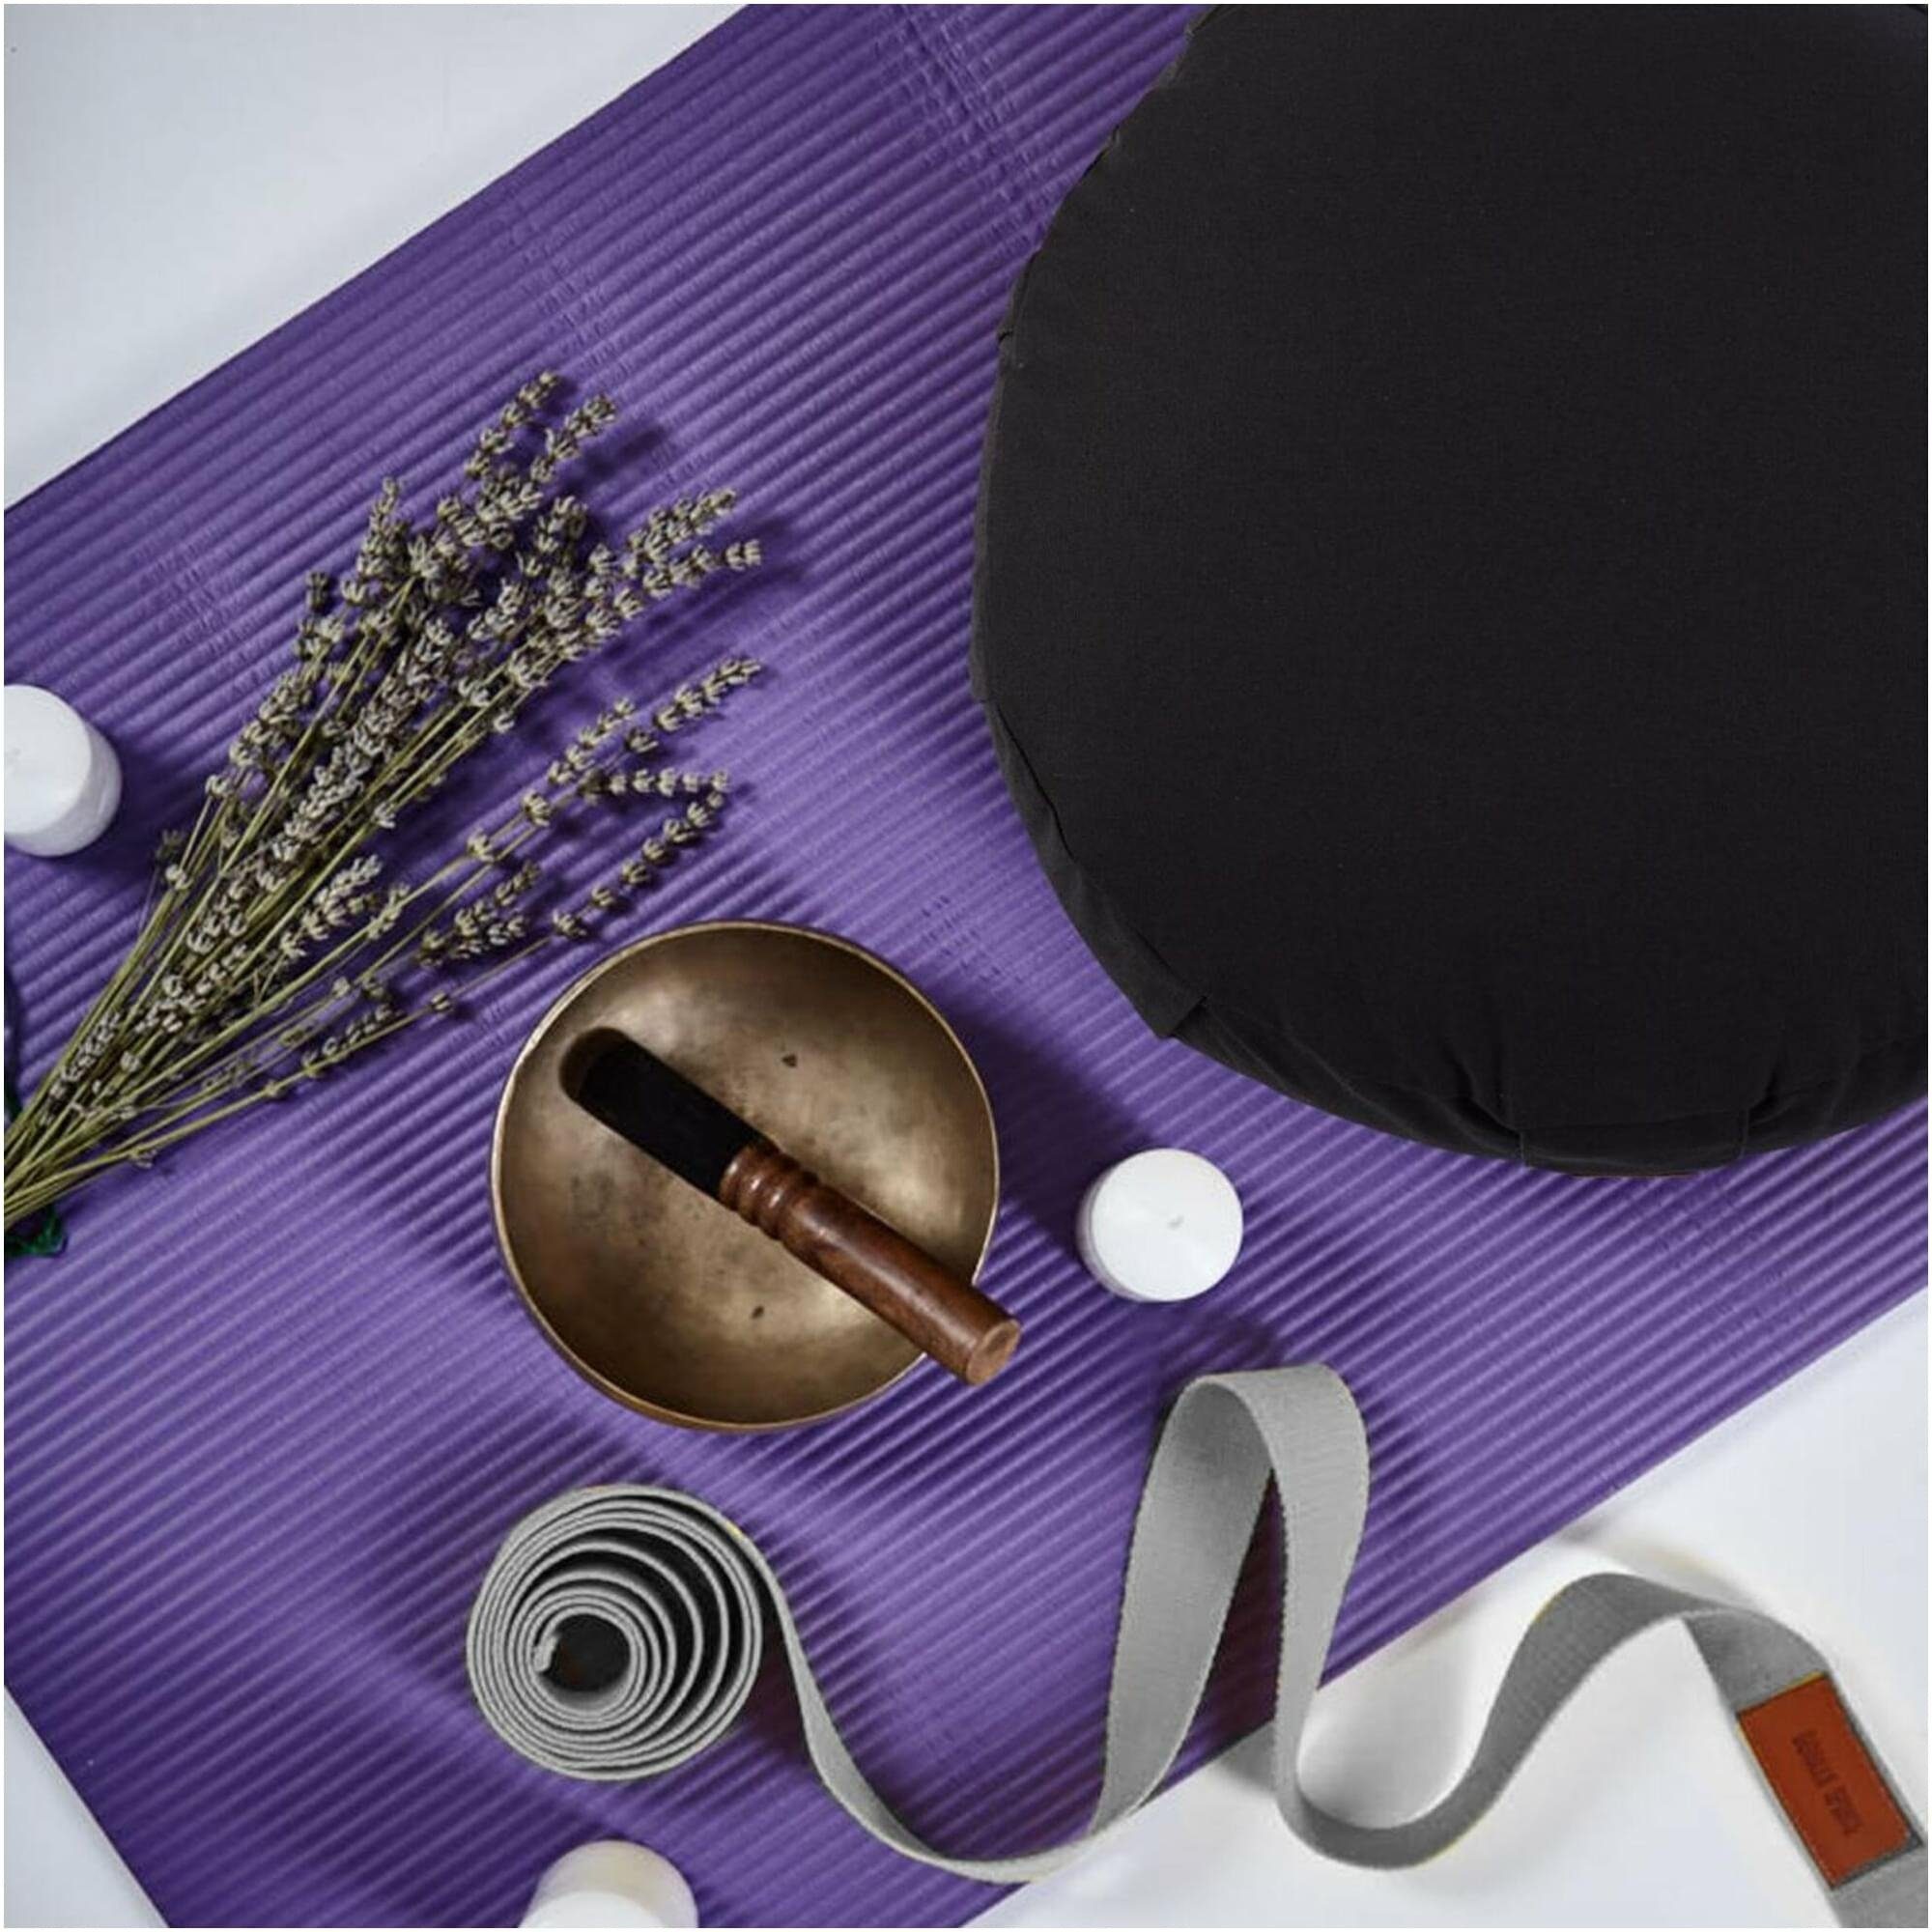 Baumwolle, SPORTS Yoga Yoga-Gürtel, Yogagurt aus 100% Metall, Grau Verschluss Strap mit GORILLA